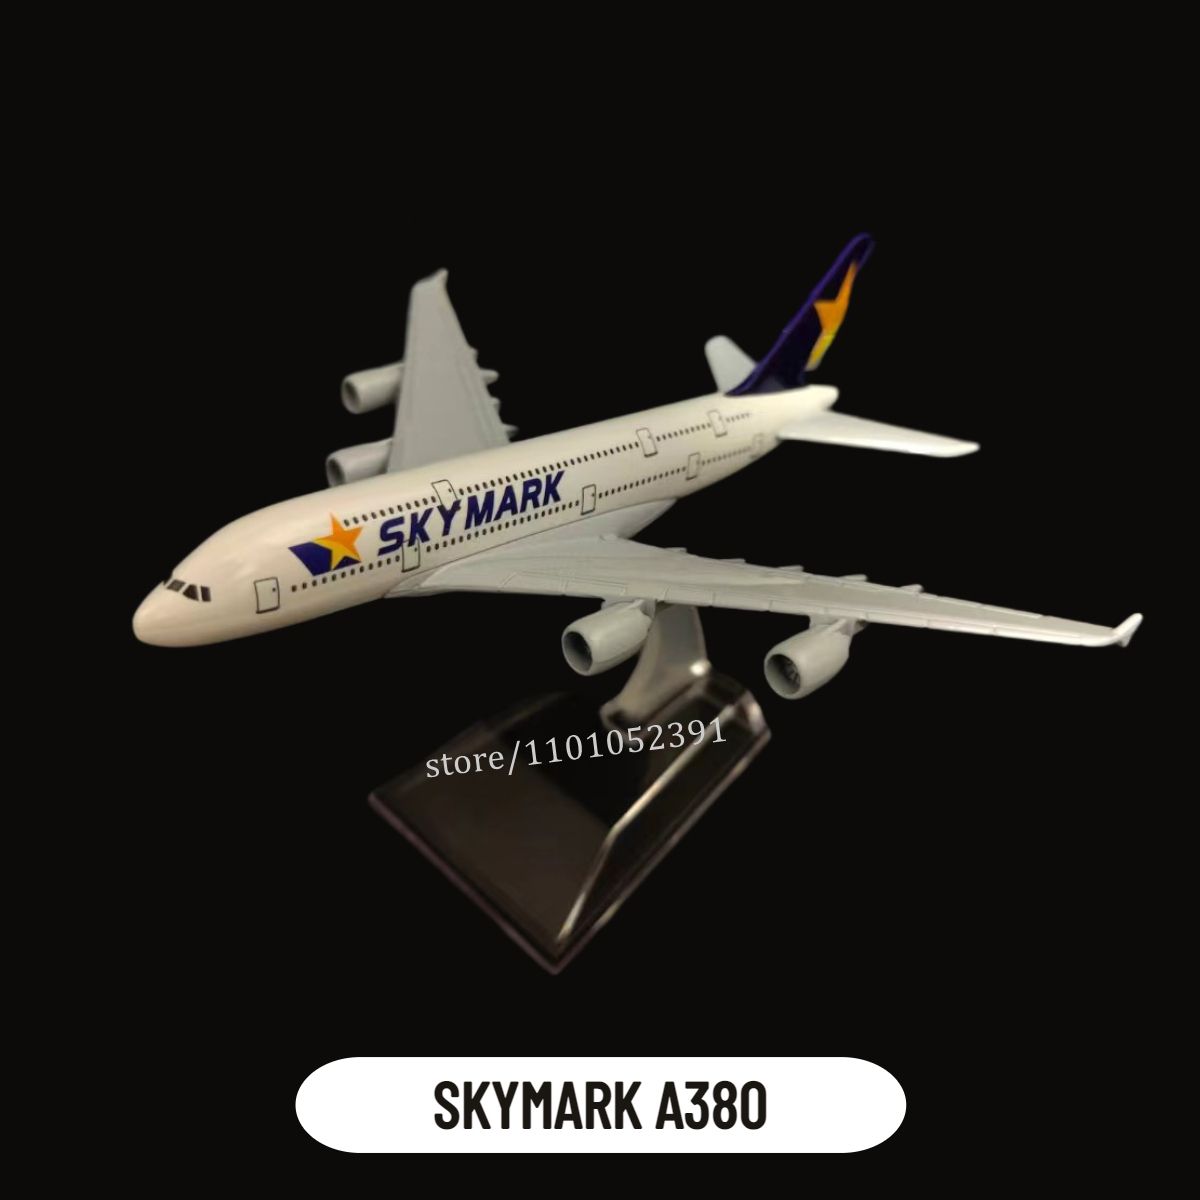 20.Skymark A380